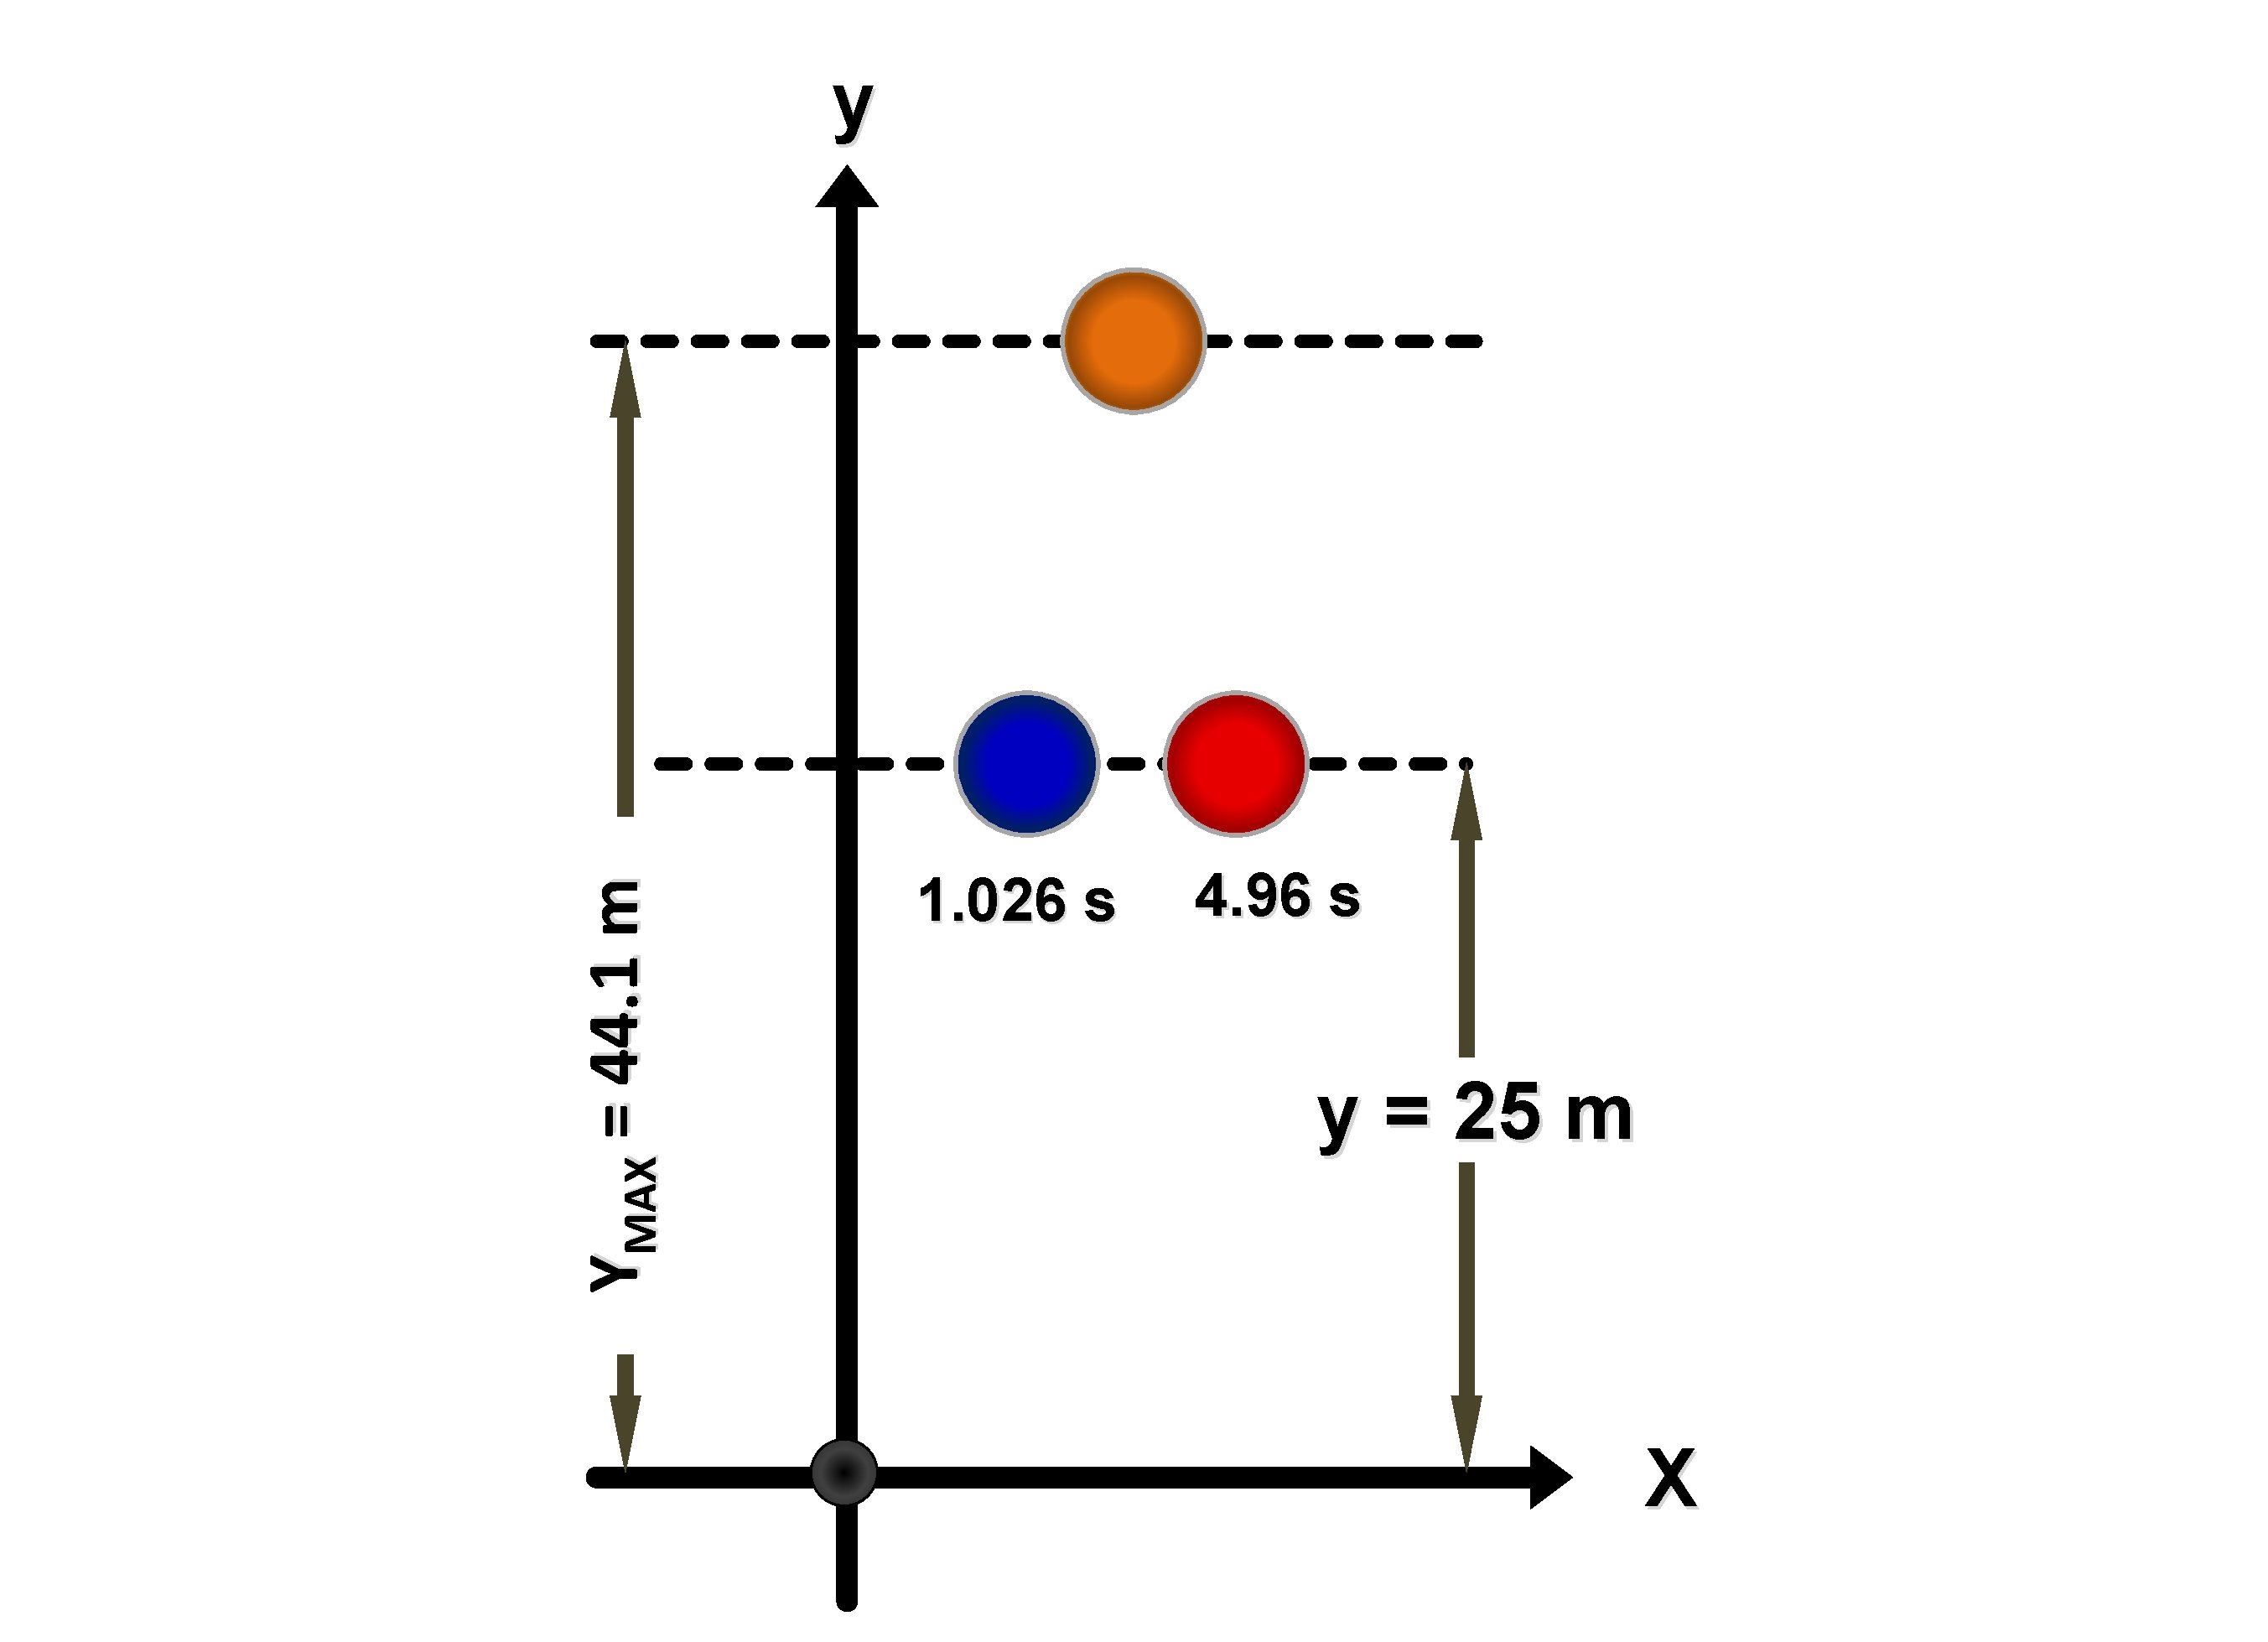 YMAX = 44. 1 m y 1. 026 s 4. 96 s y =